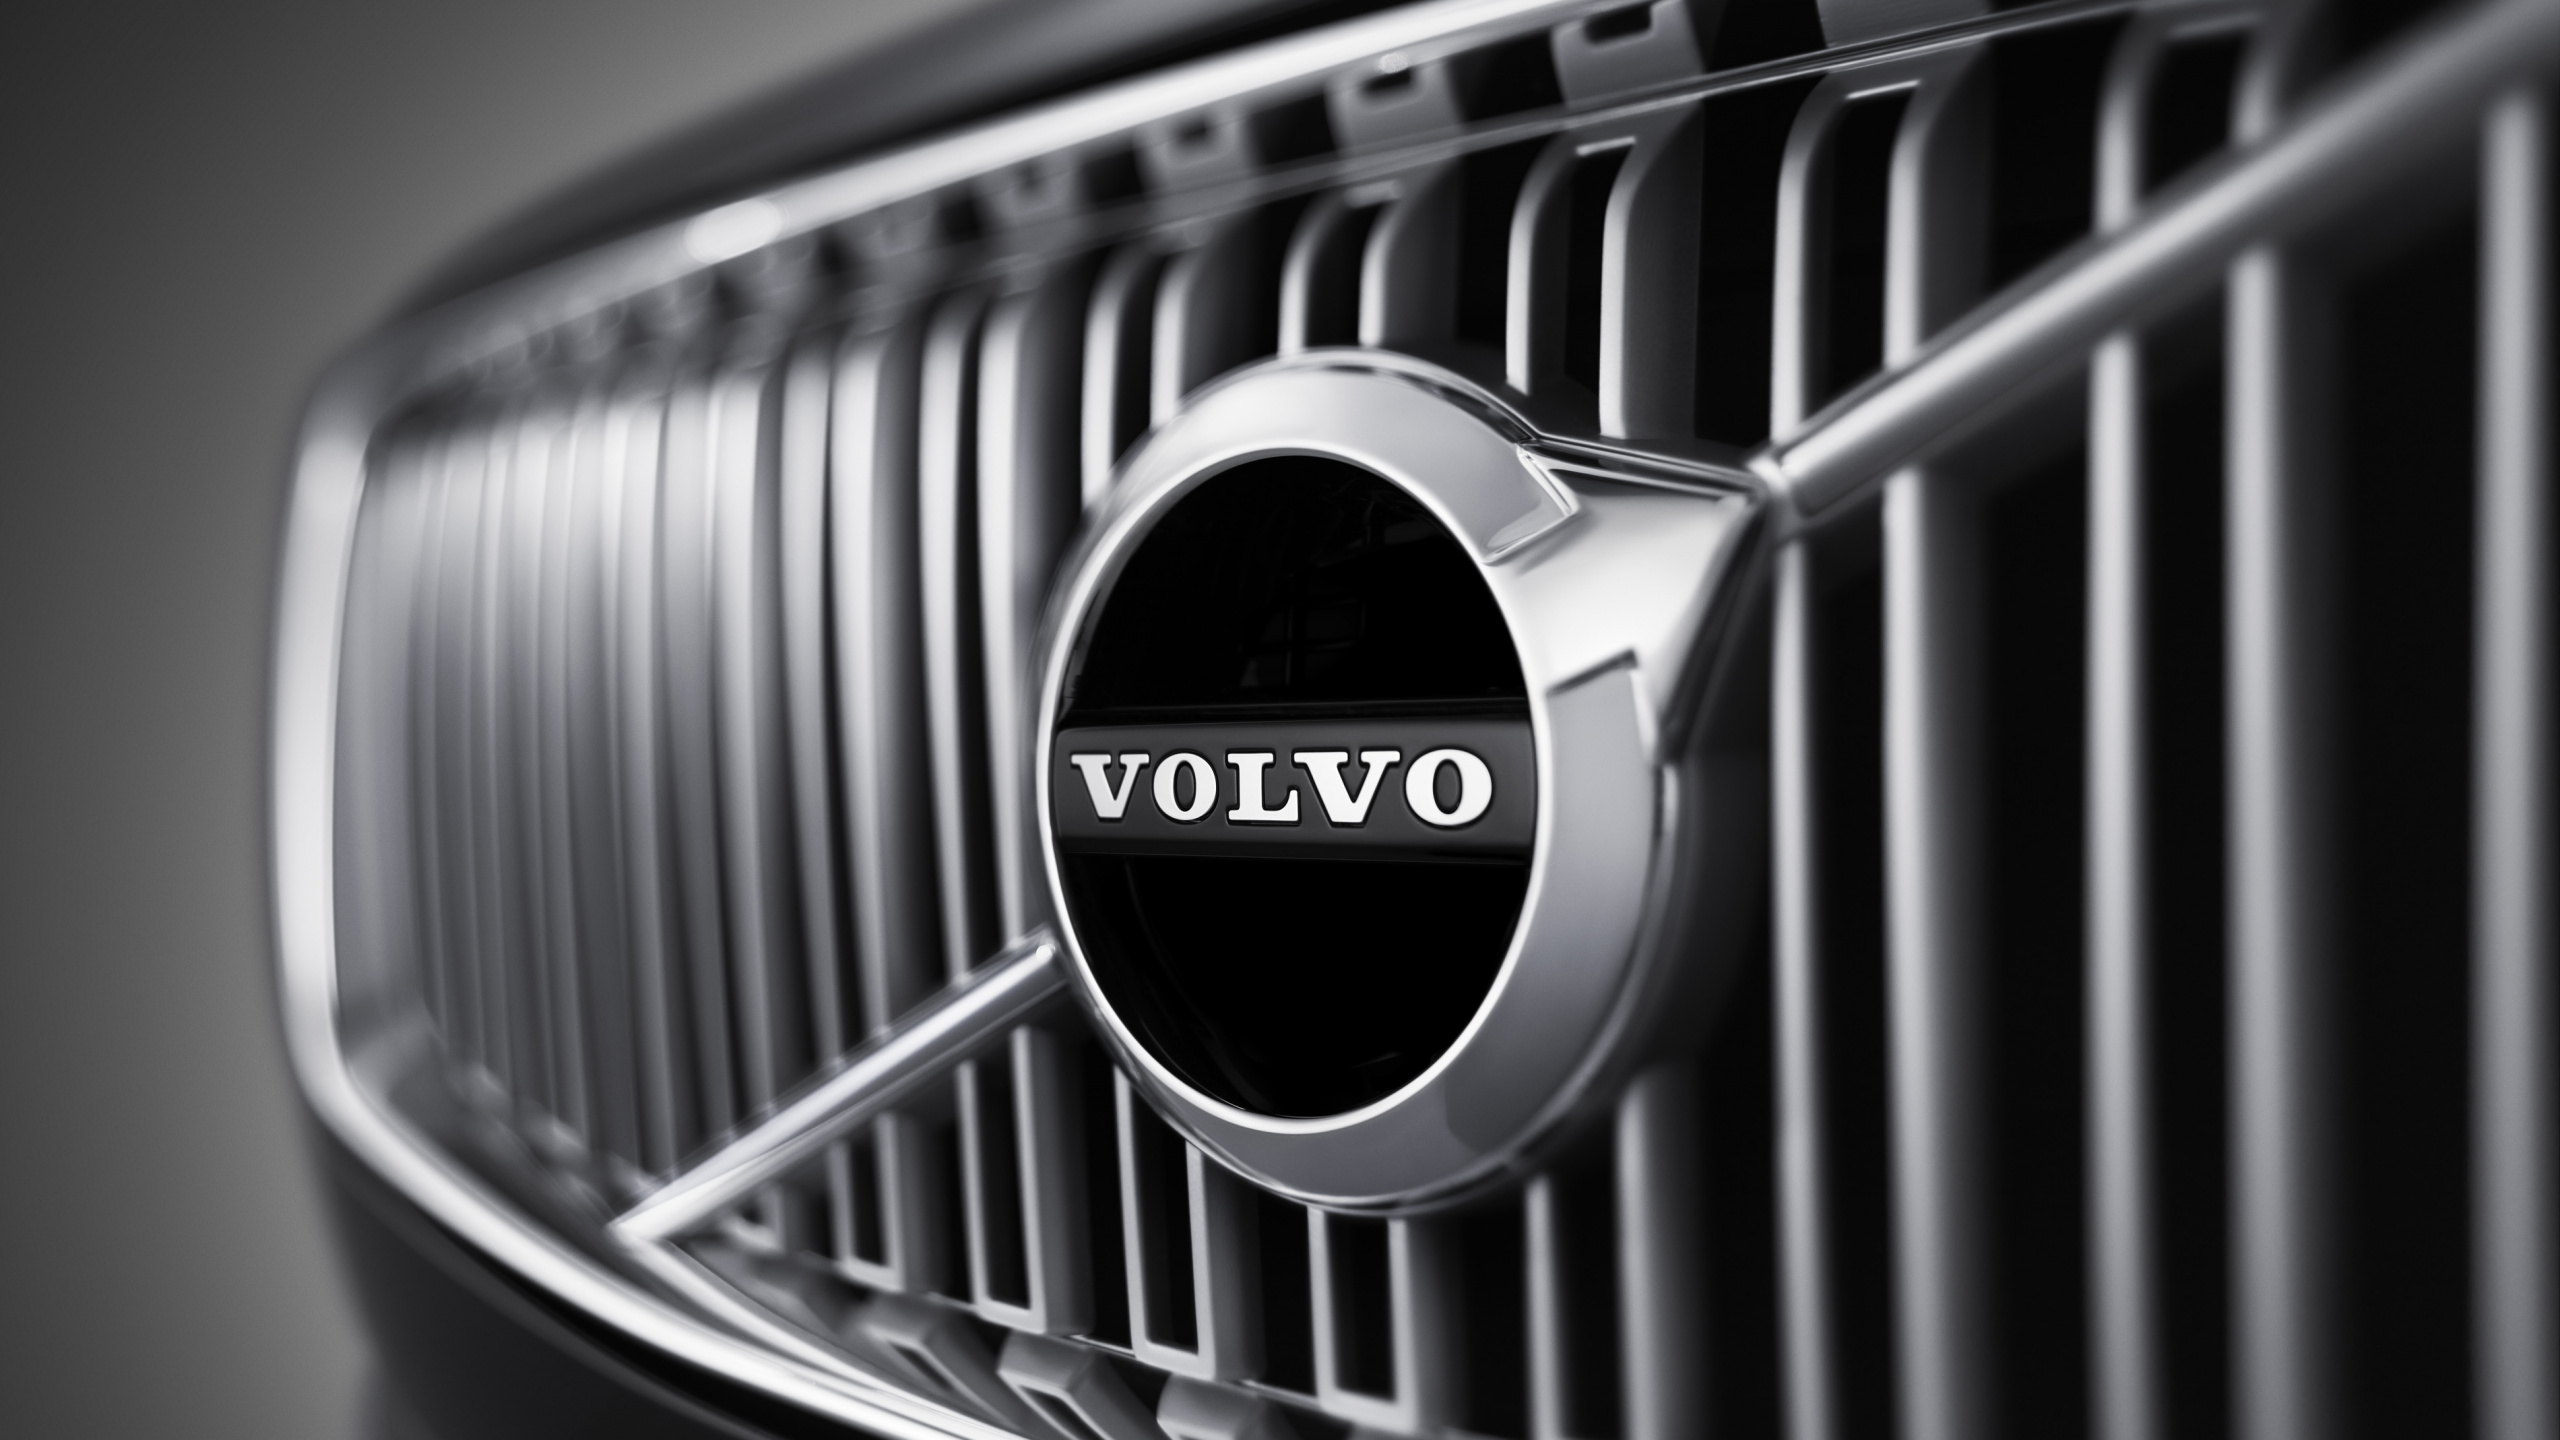 ab Volvo, Voitures Volvo, Voiture, Grille, Noir et Blanc. Wallpaper in 2560x1440 Resolution